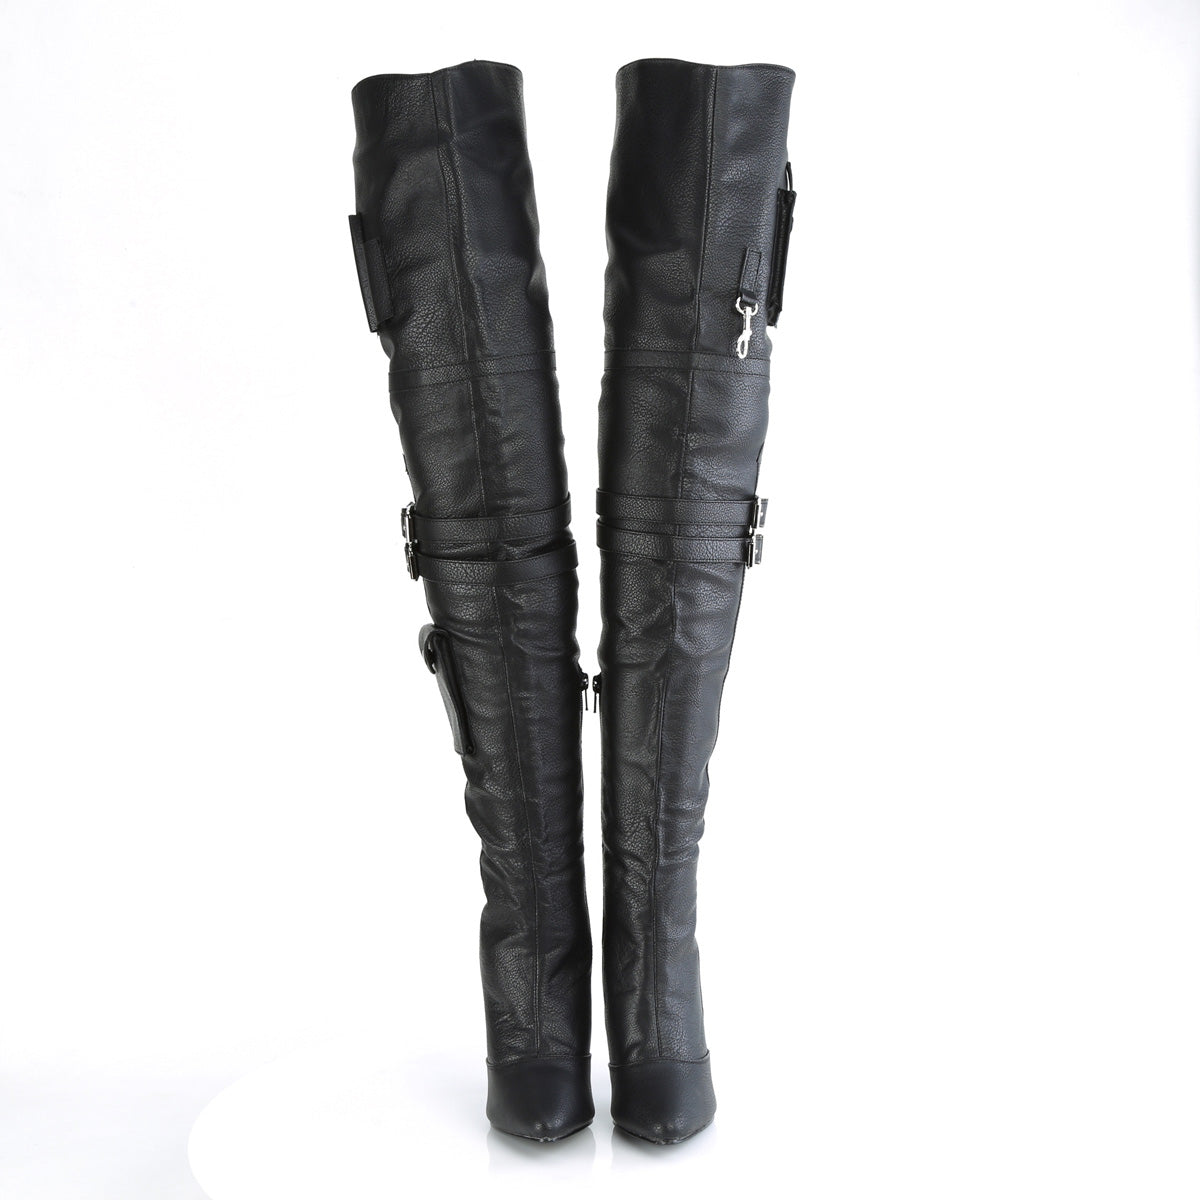 SEDUCE-3019 Black Thigh High Boots